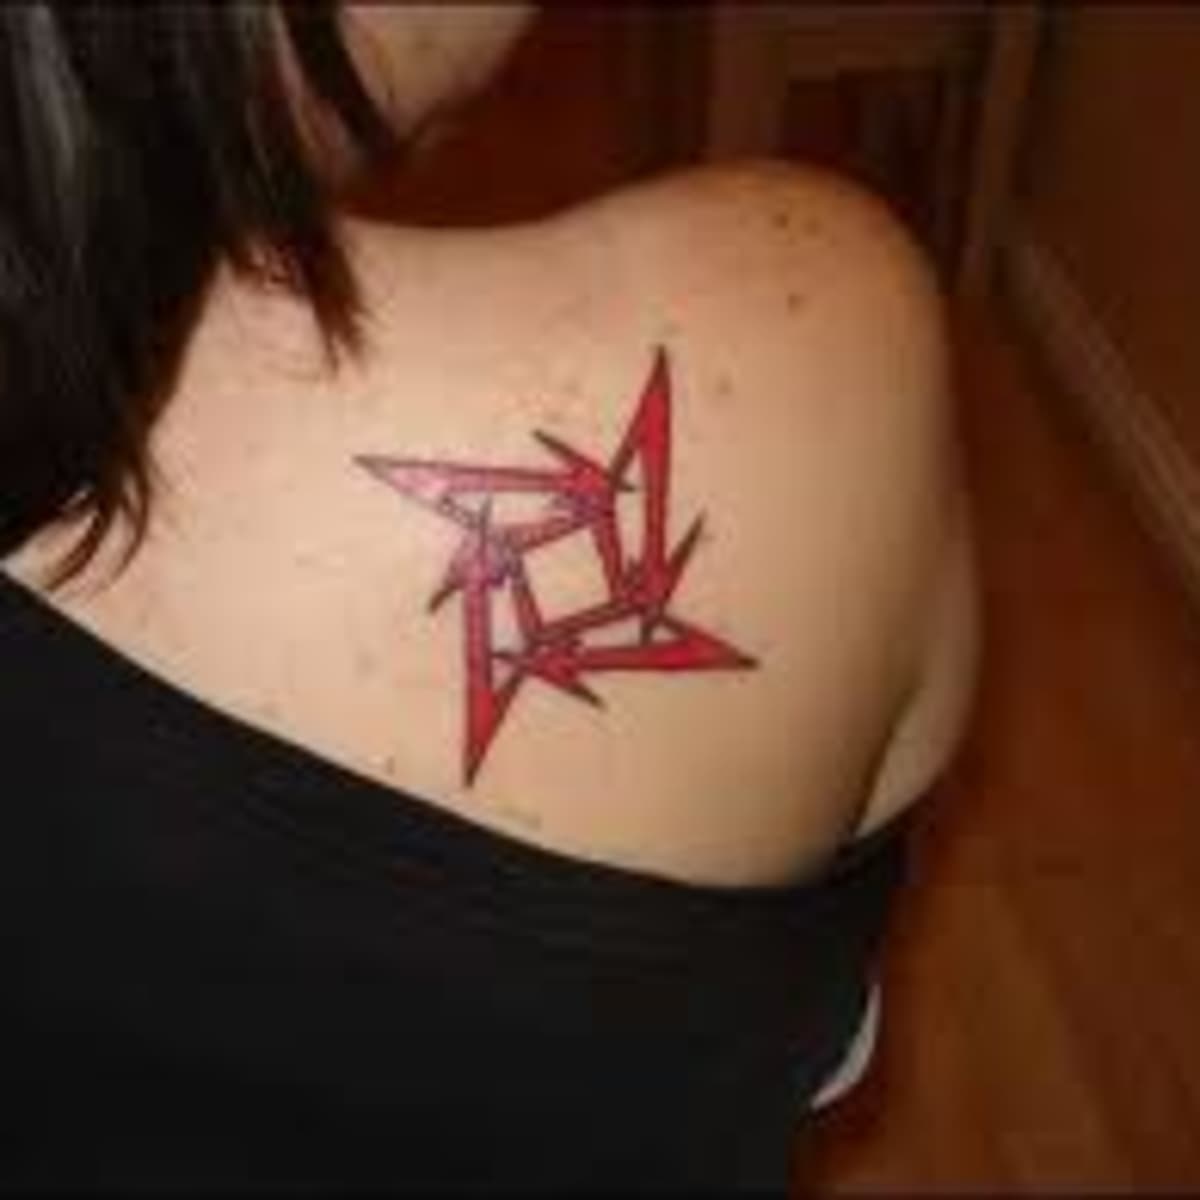 Star Tattoos Symbolism and Styles  Self Tattoo